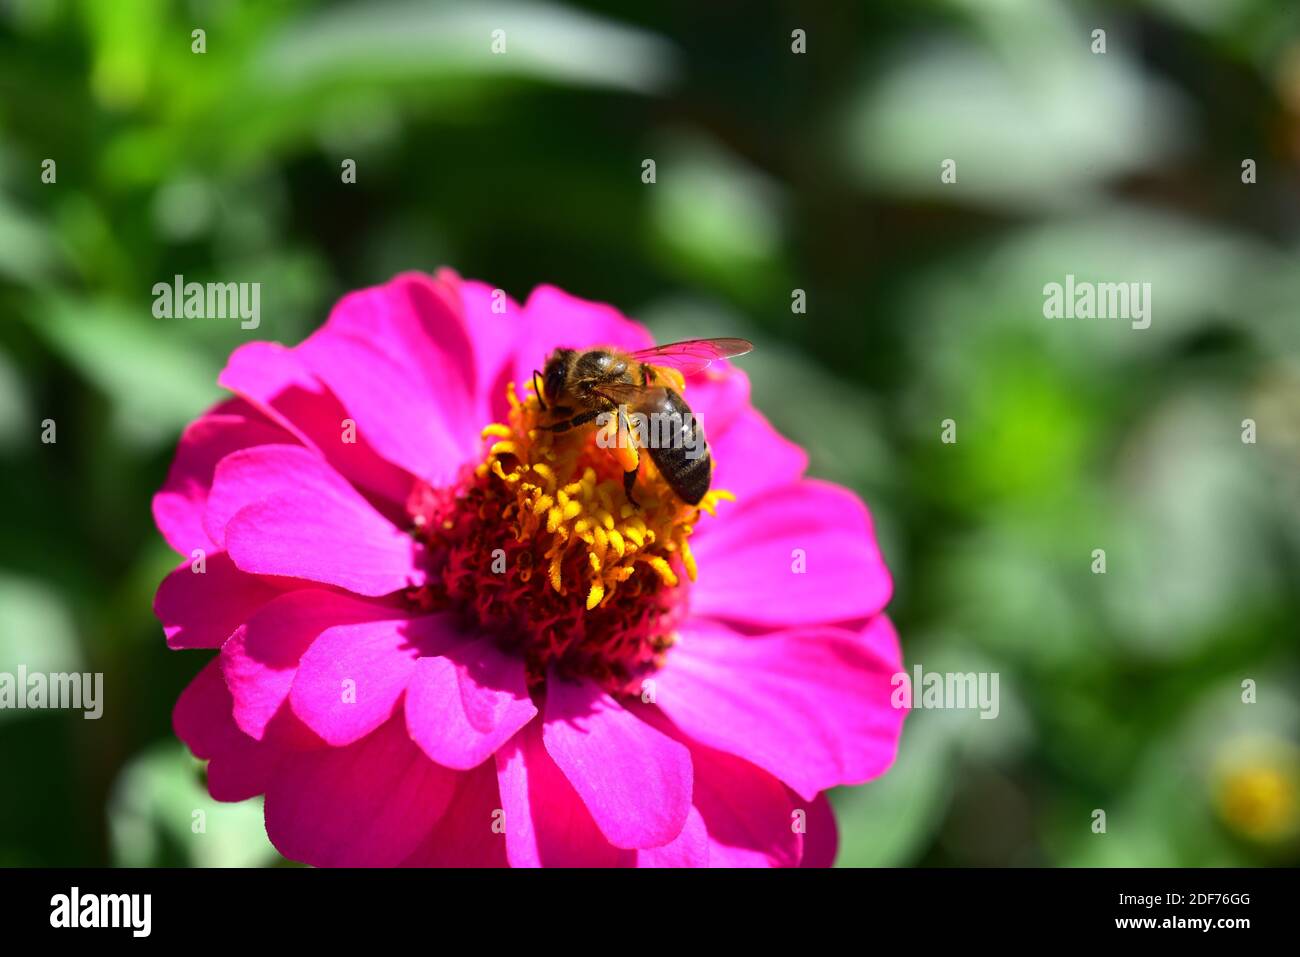 La abeja europea de miel (Apis mellifera o Apis mellifica) es un productor de miel de insectos himenópteros. Flor de Zinnia. Foto de stock